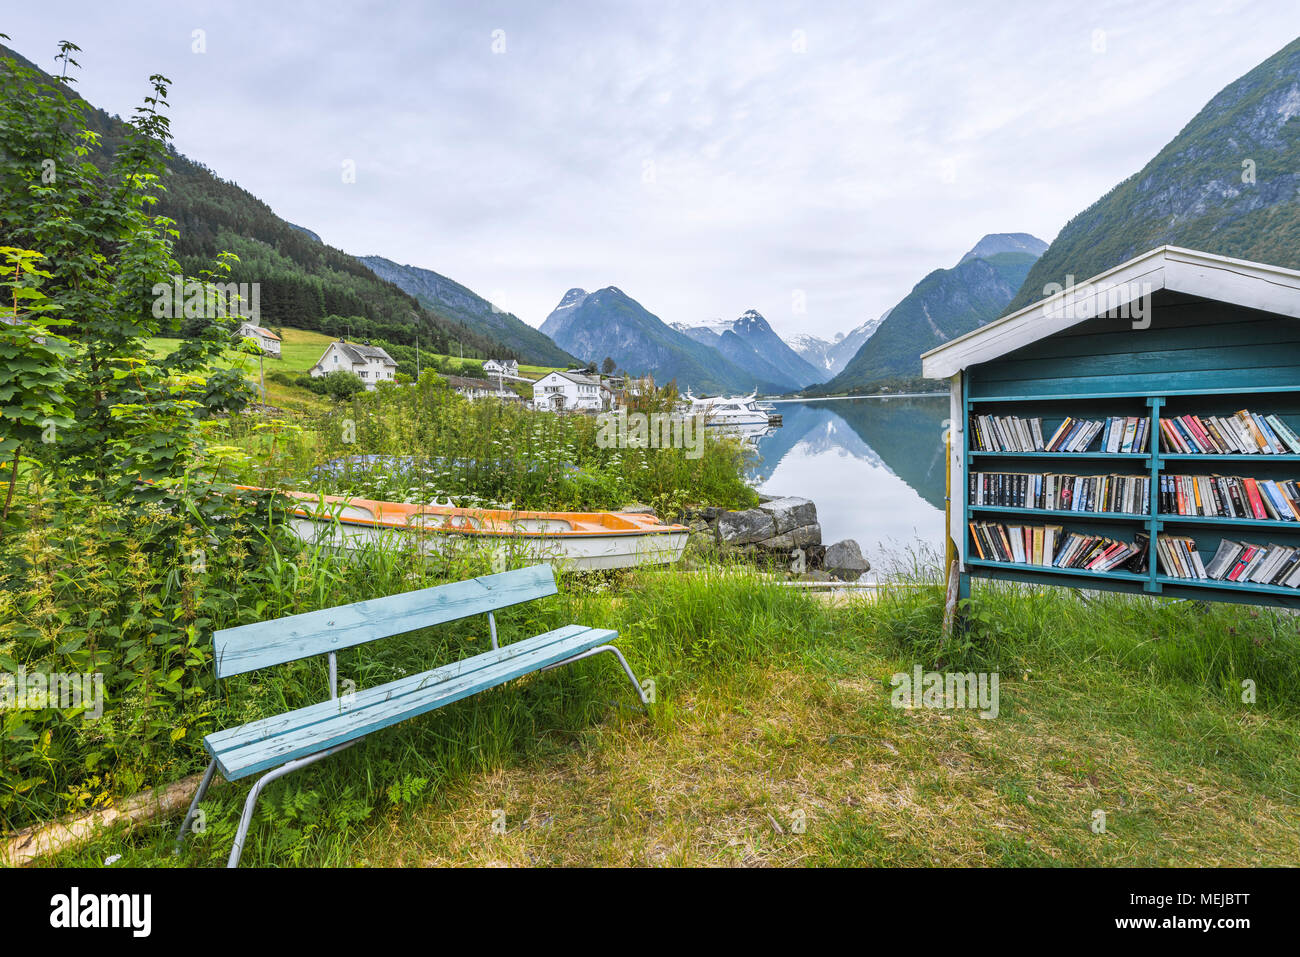 Outdoor Bibliothek und Sitzbank am Fjord, Fjaerlandsfjorden, Norwegen, öffentlichen Bücherregal und Boot am Ufer mit malerischer Umgebung Stockfoto